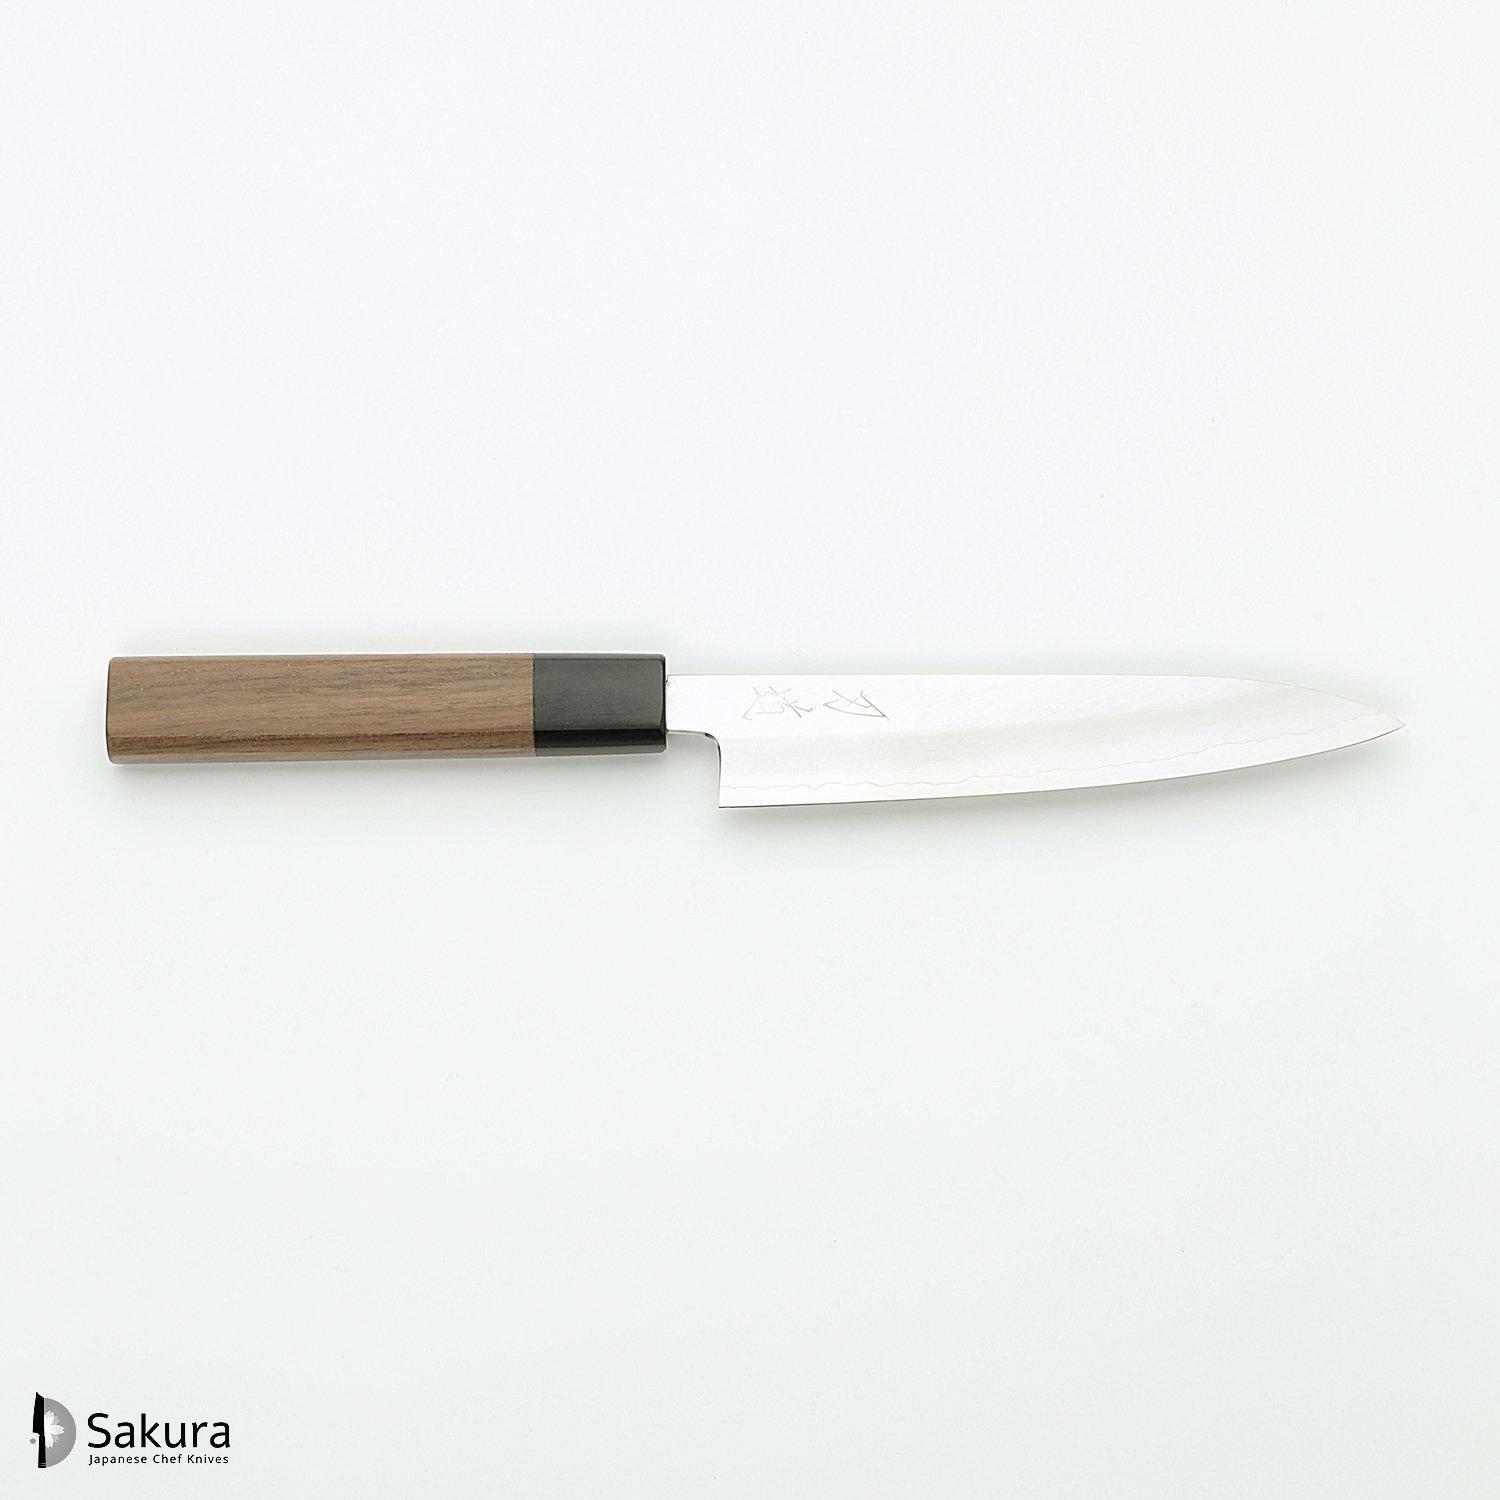 סכין עזר קטנה רב-תכליתית פֶּטִי 150מ״מ מחושלת בעבודת יד 3 שכבות: פלדת פחמן יפנית מתקדמת מסוג Ginsan Silver#3 עטופה פלדת אל-חלד בגימור מט מלוטש גימור מט מלוטש האדו יפן